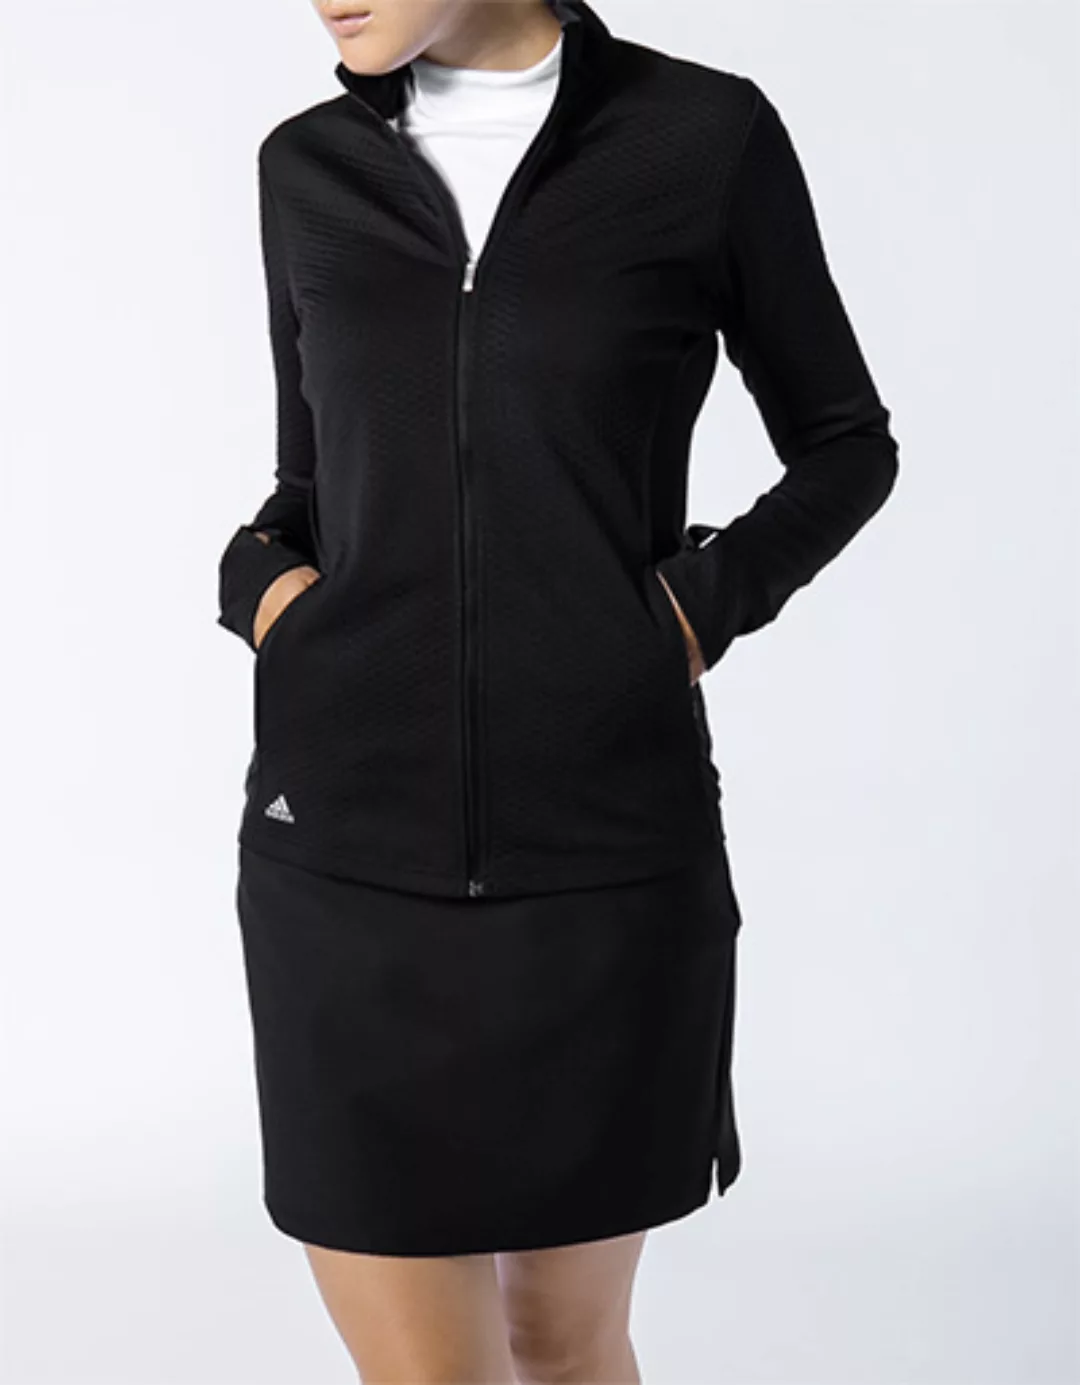 adidas Golf Damen Funktionsjacke black DZ6477 günstig online kaufen